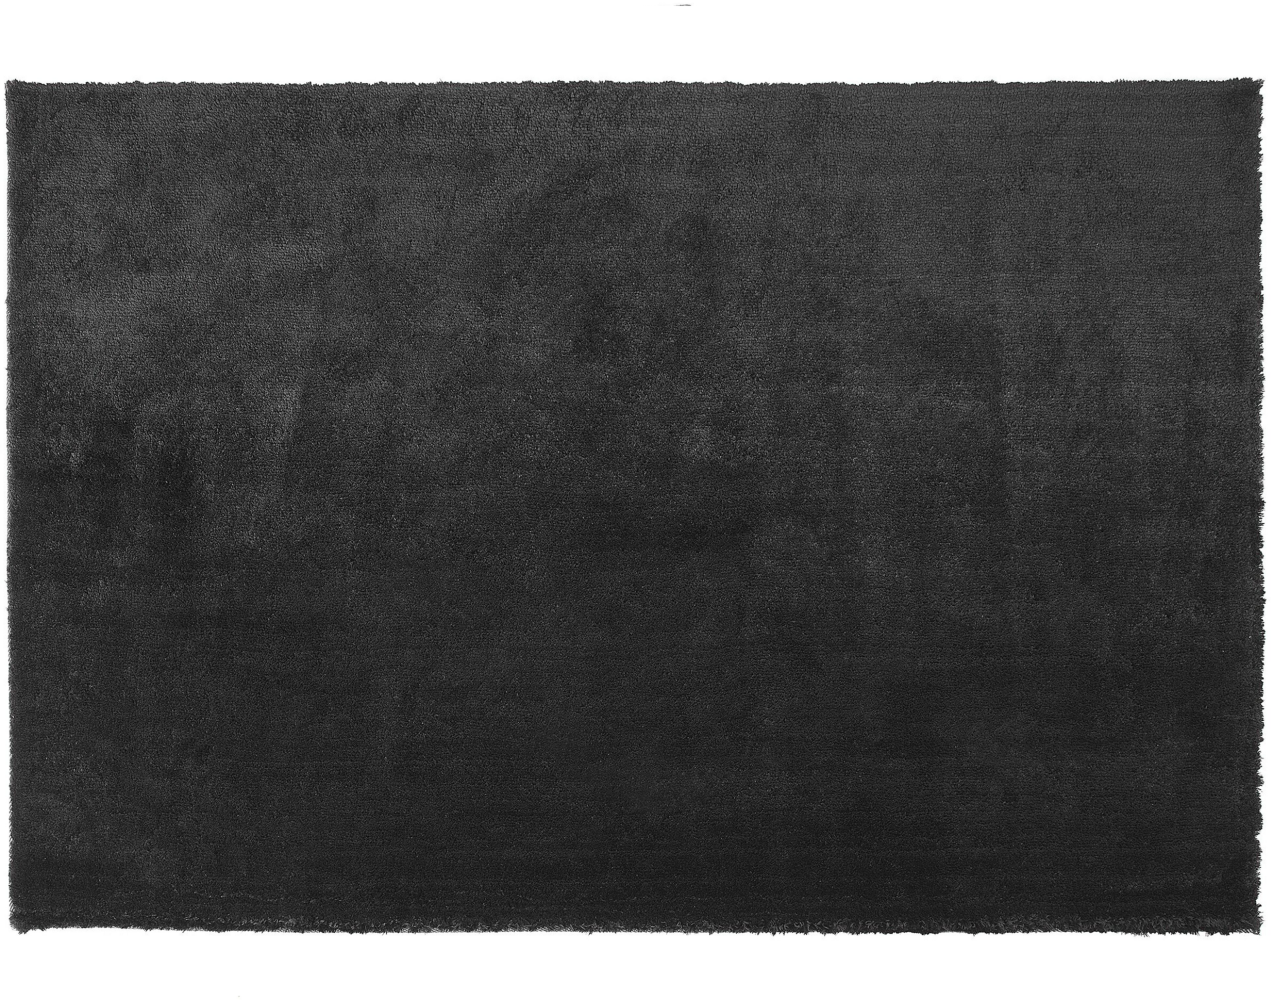 Teppich schwarz 160 x 230 cm Shaggy EVREN Bild 1